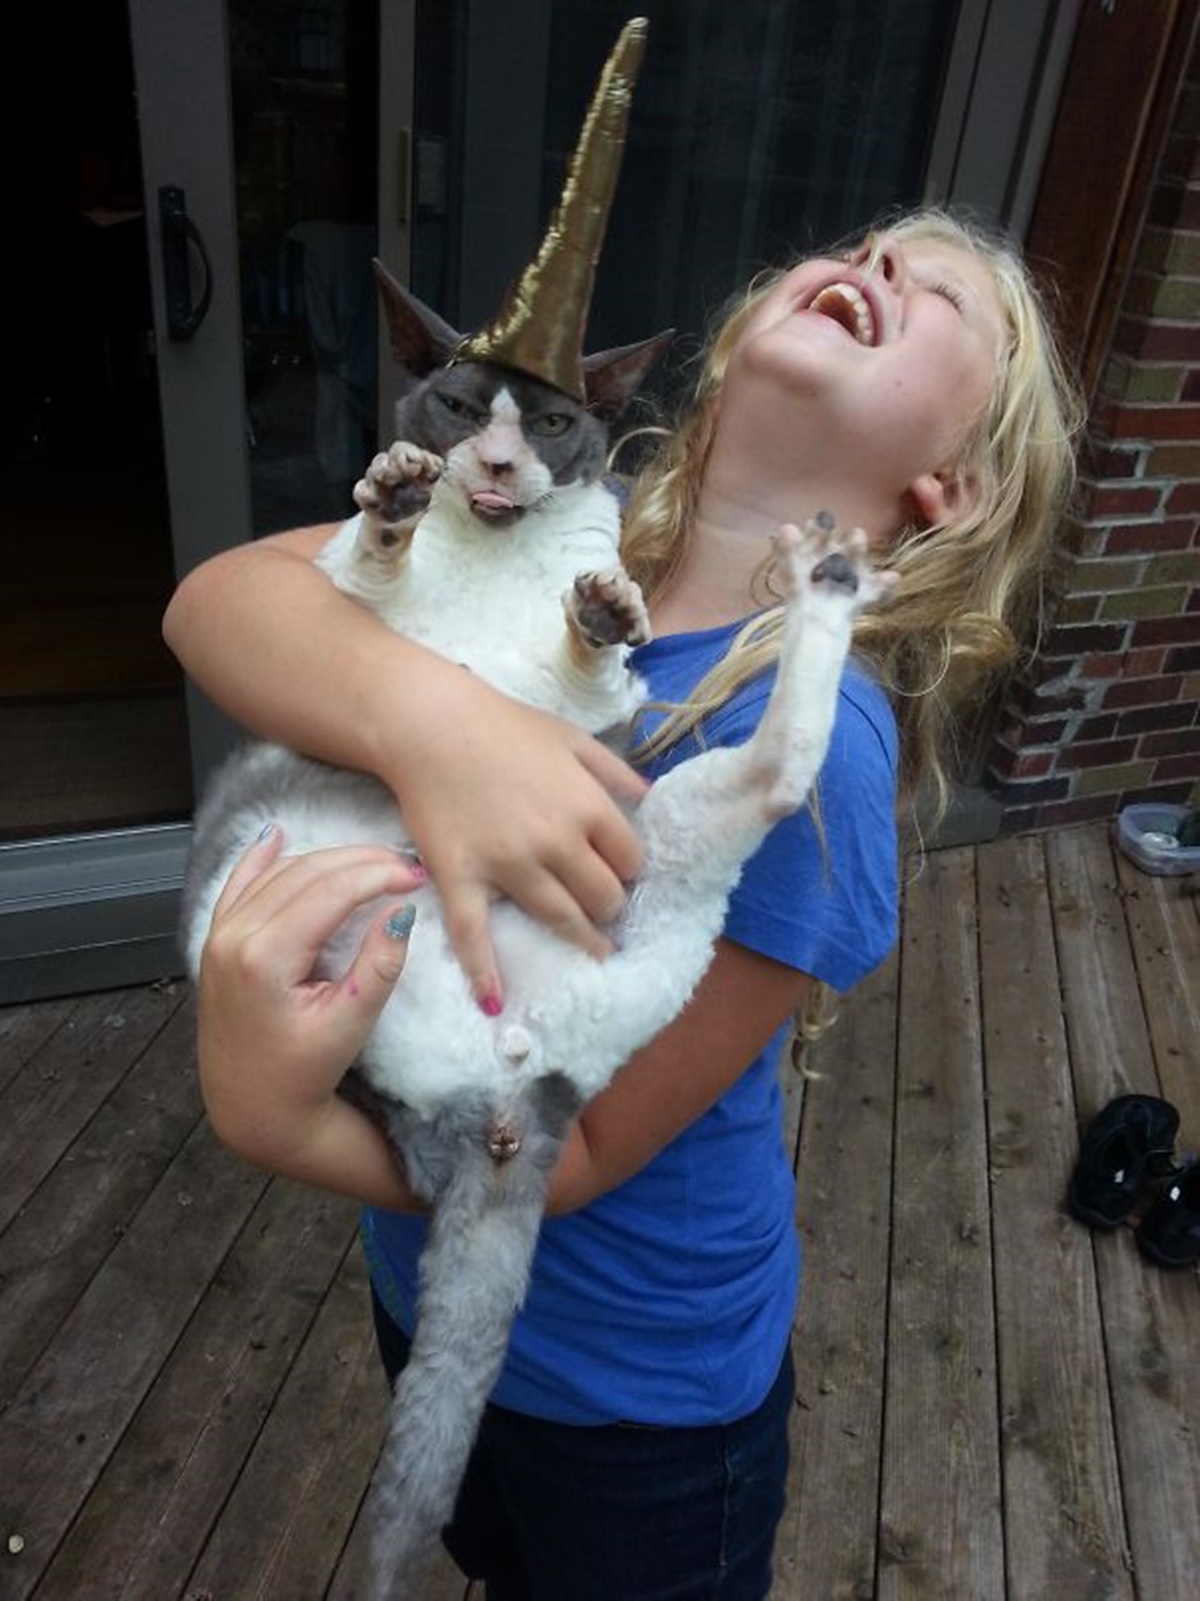 bambina con gatto in braccio